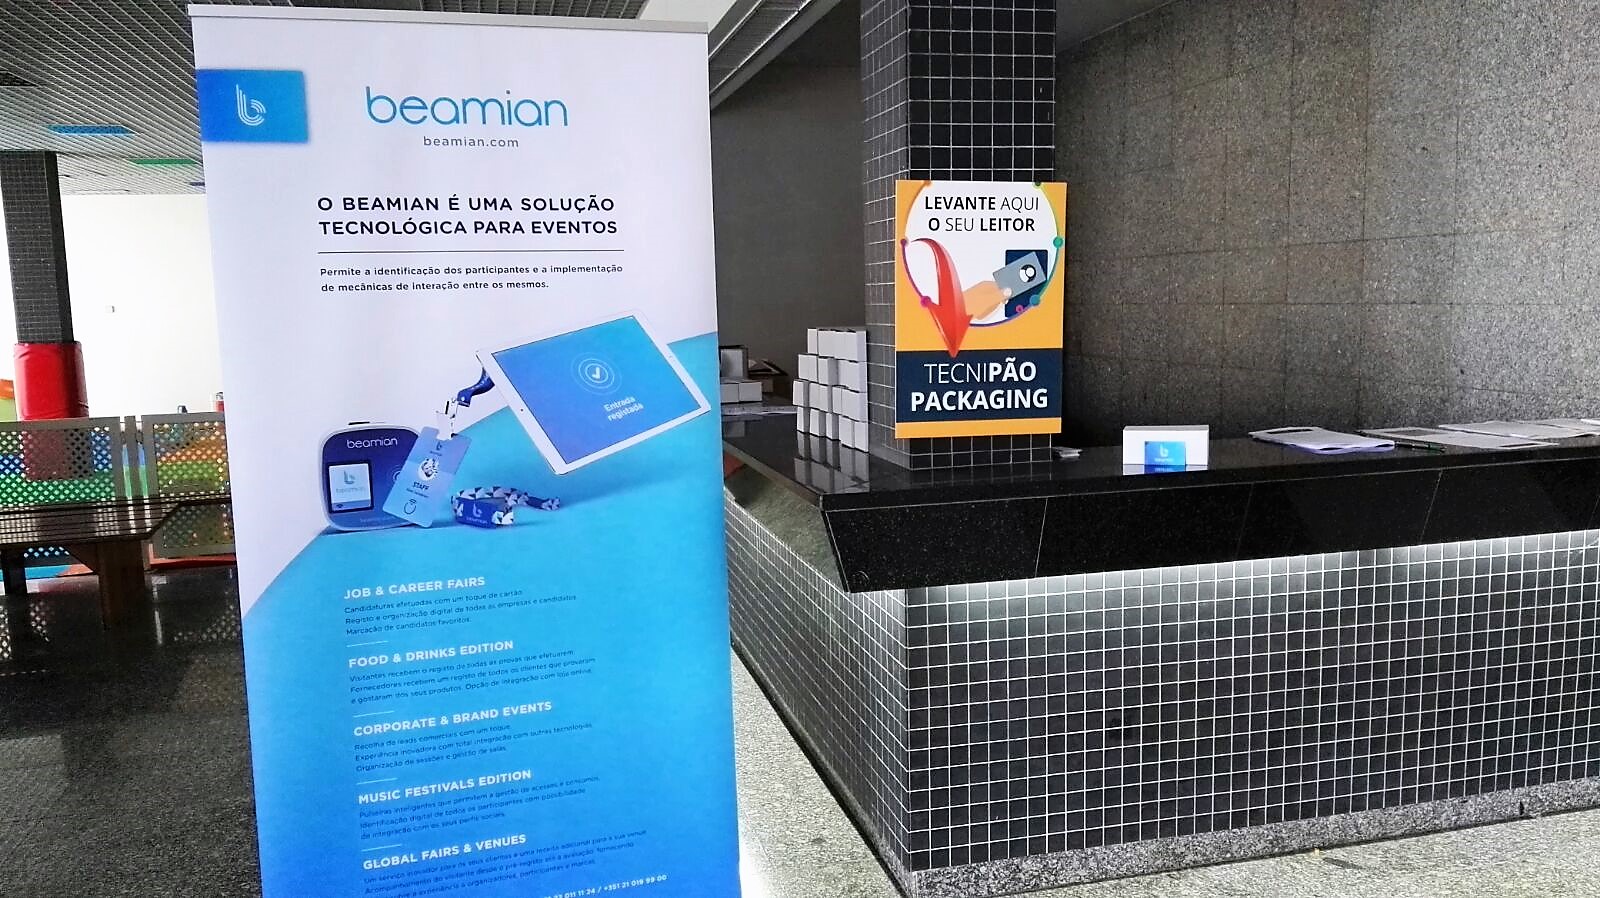 Packaging 2018 – beamian bei Tecnipão